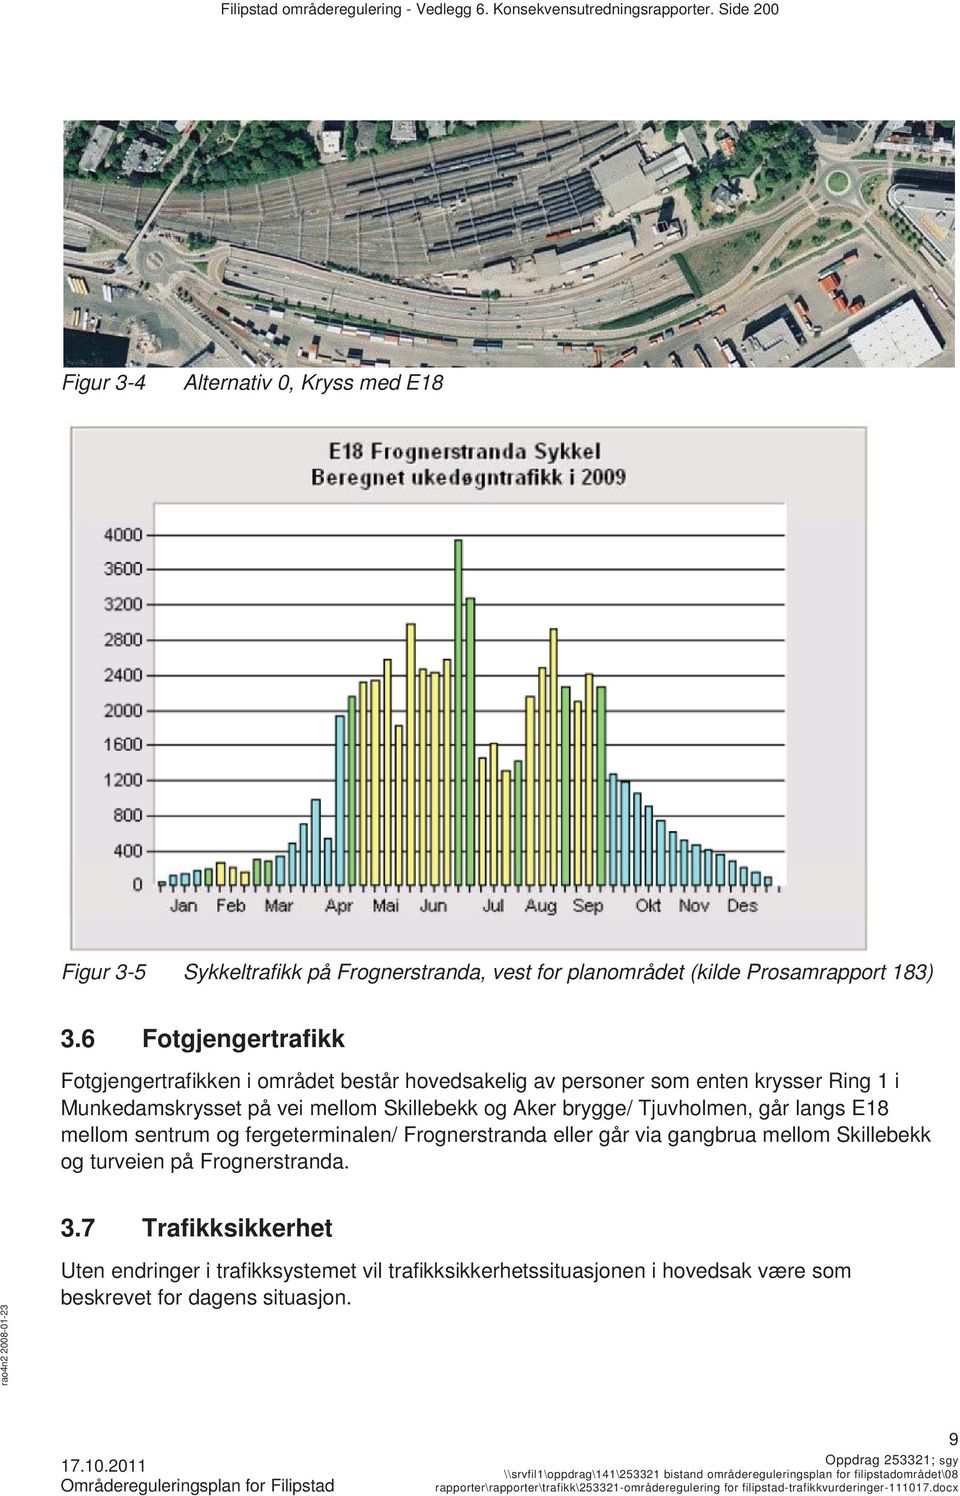 6 Fotgjengertrafikk Fotgjengertrafikken i området består hovedsakelig av personer som enten krysser Ring 1 i Munkedamskrysset på vei mellom Skillebekk og Aker brygge/